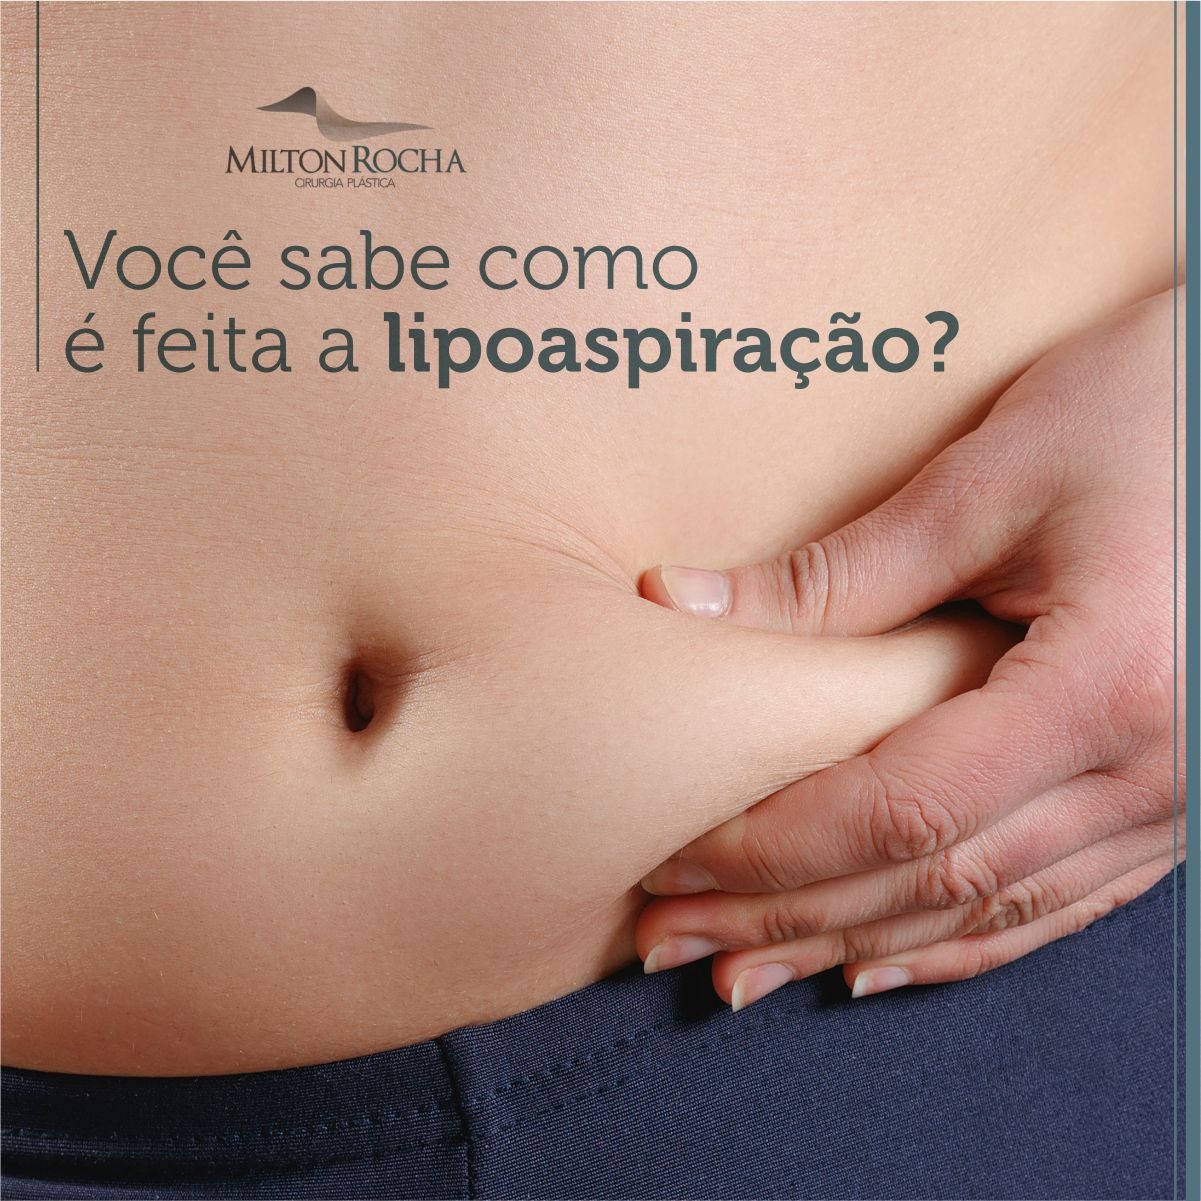 You are currently viewing Cirurgia Plástica Recife – Você sabe como é feita a lipoaspiração?